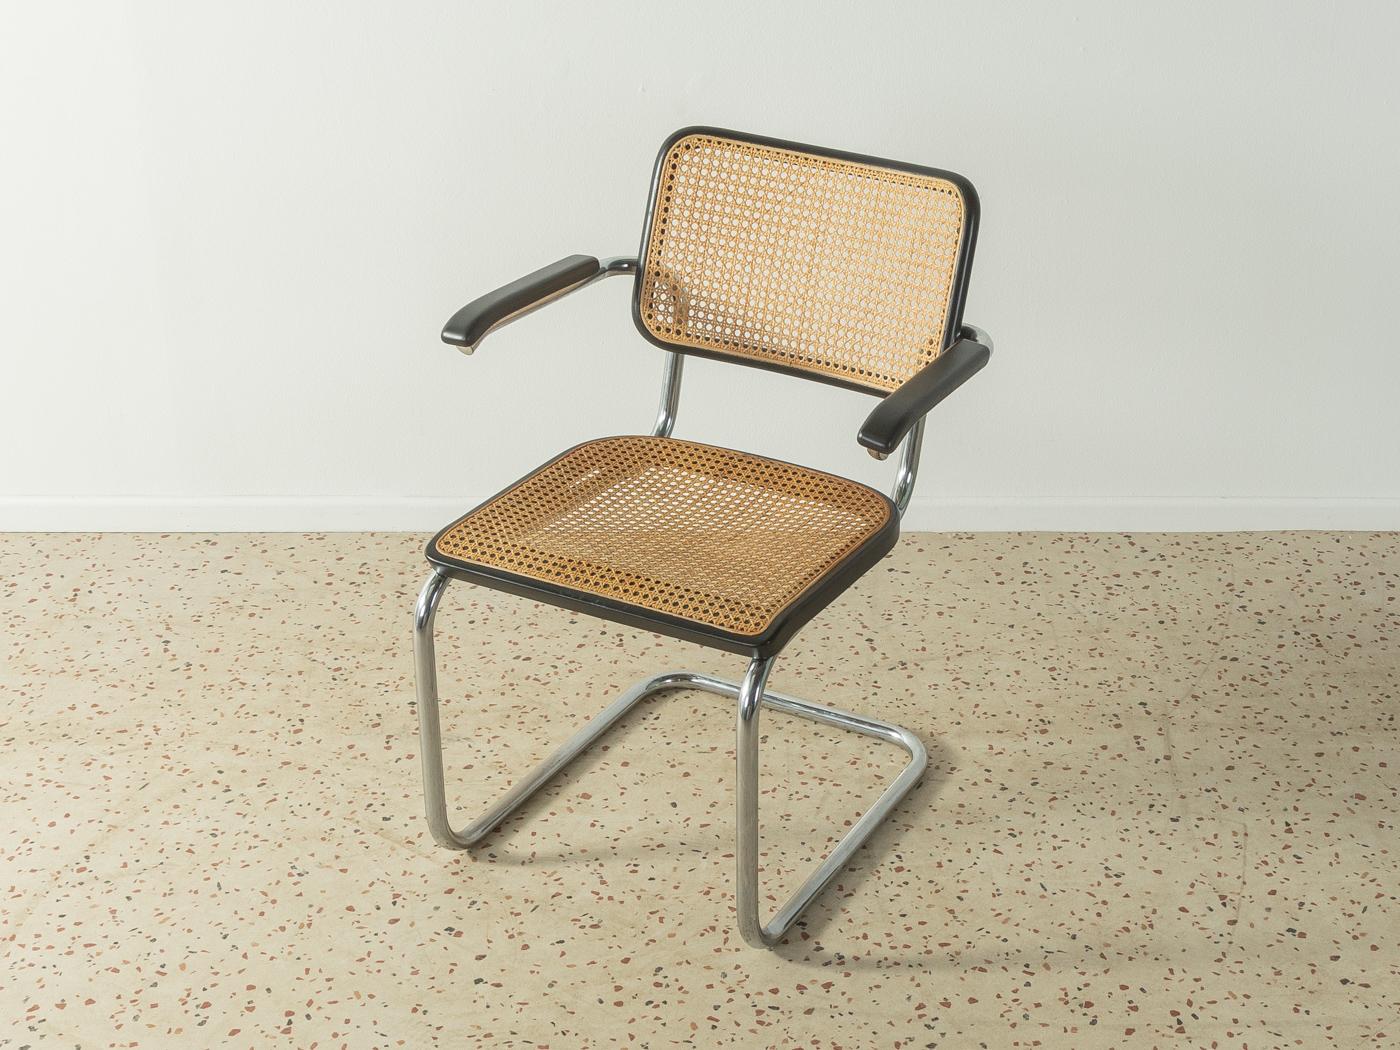 Legendärer Stahlrohrsessel, Modell S 64, entworfen von Marcel Breuer für Thonet (1928). Solides Gestell aus verchromtem Stahlrohr. Sitz und Rückenlehne sind mit dem originalen 